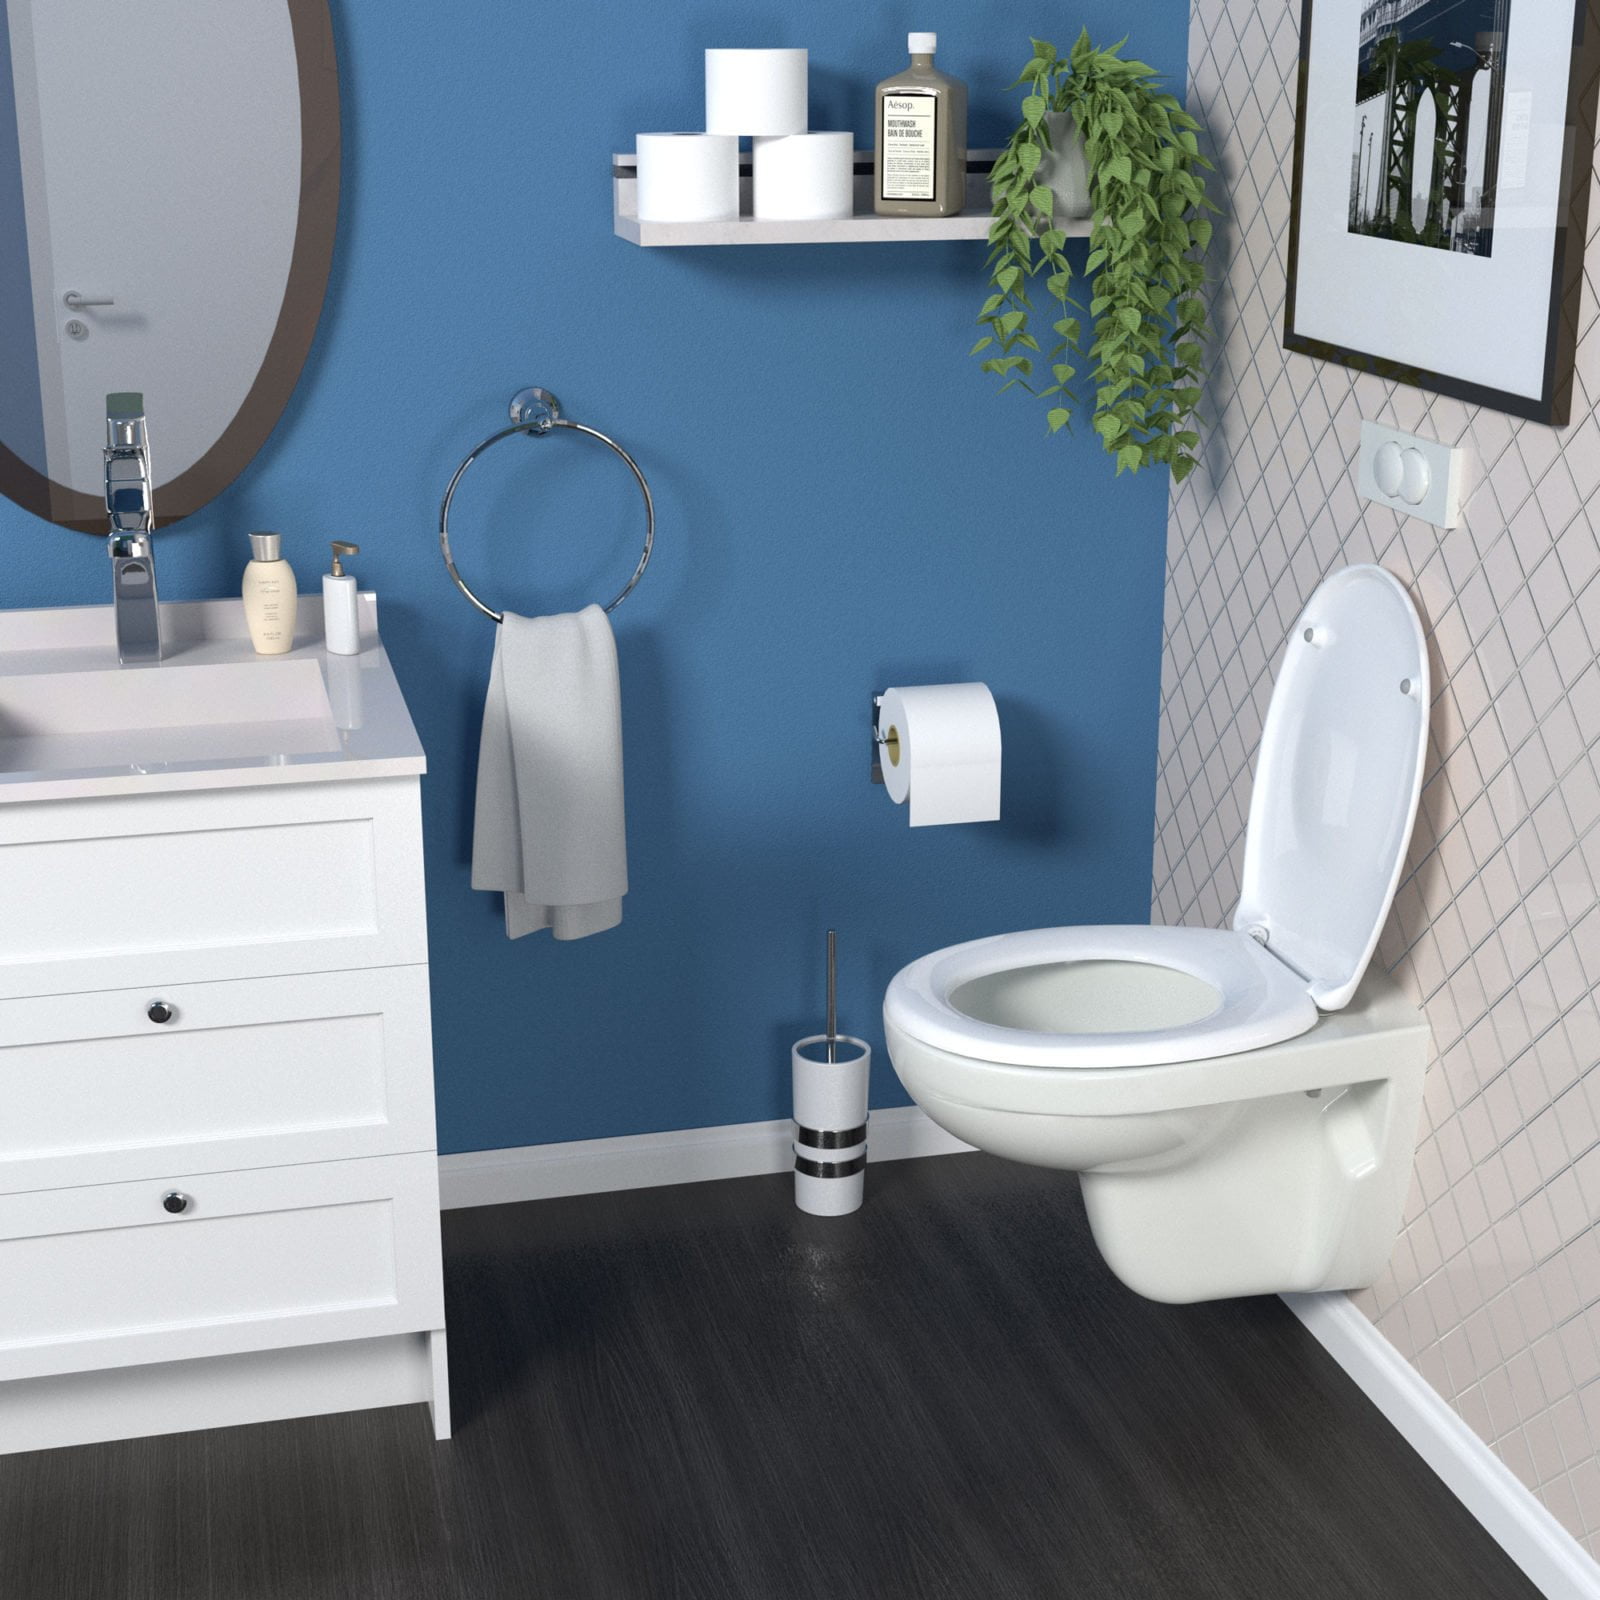 renderiranje wc sjedala u kupaonici bemis designer2 dizajn ambalaze packaging design 1